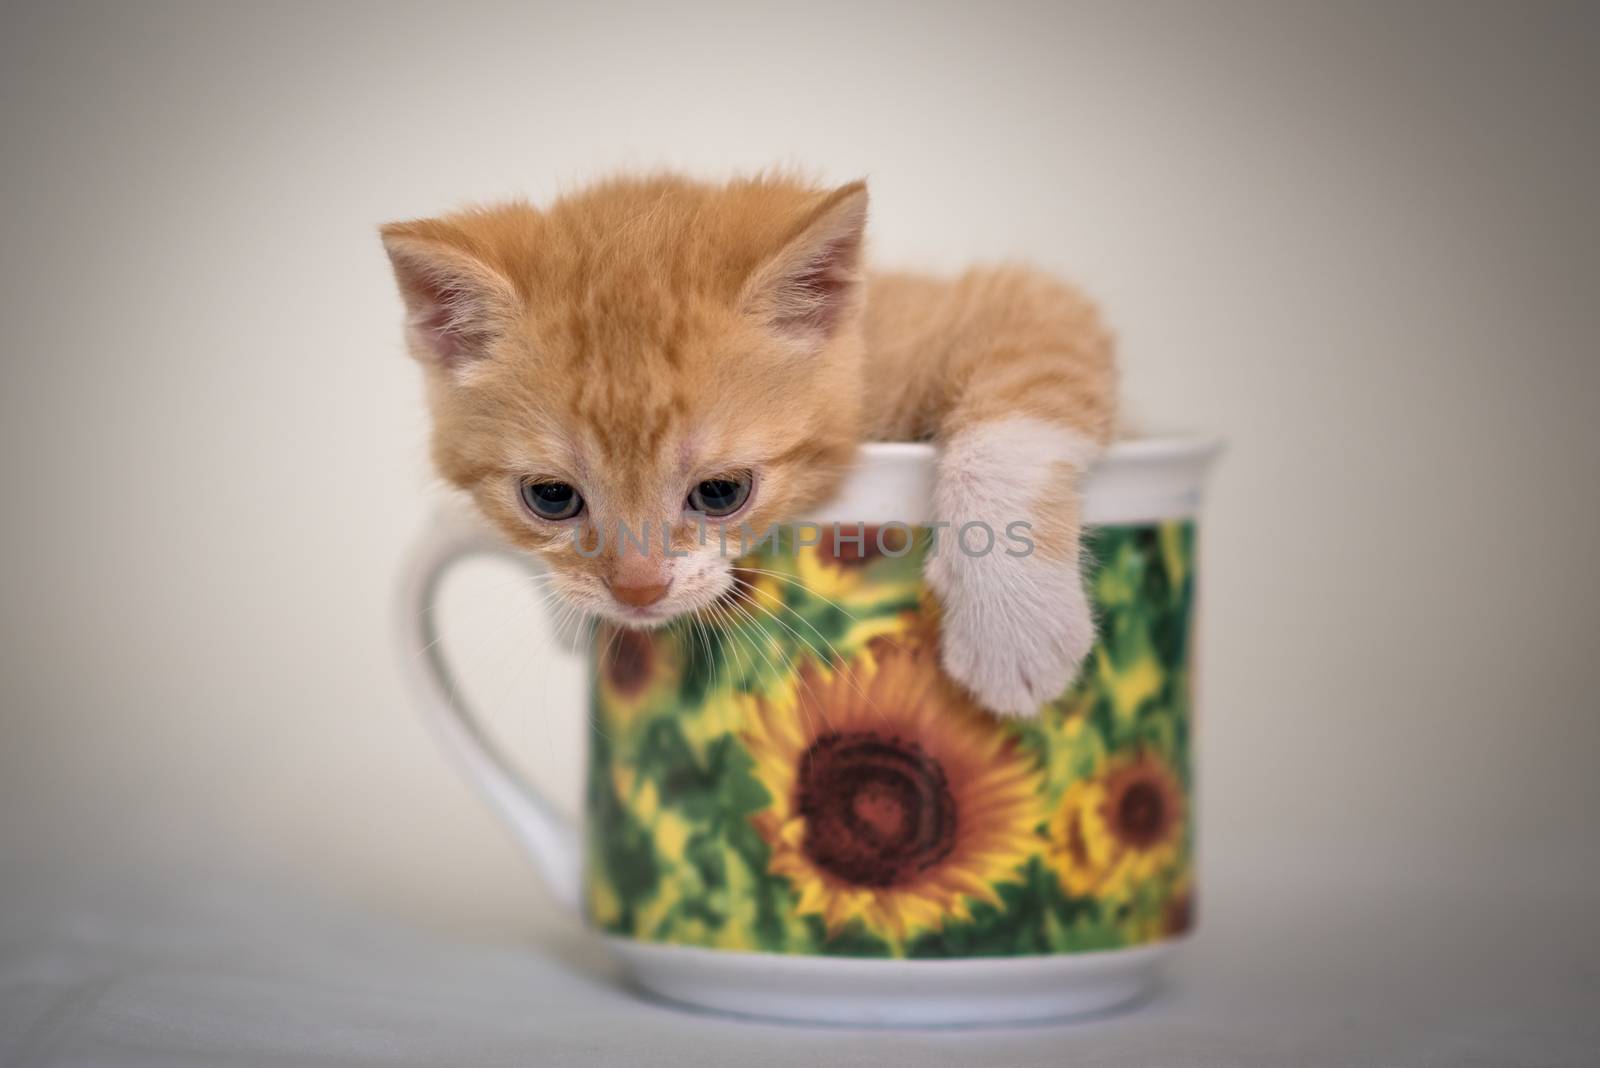 Kitten in cup by nickfox